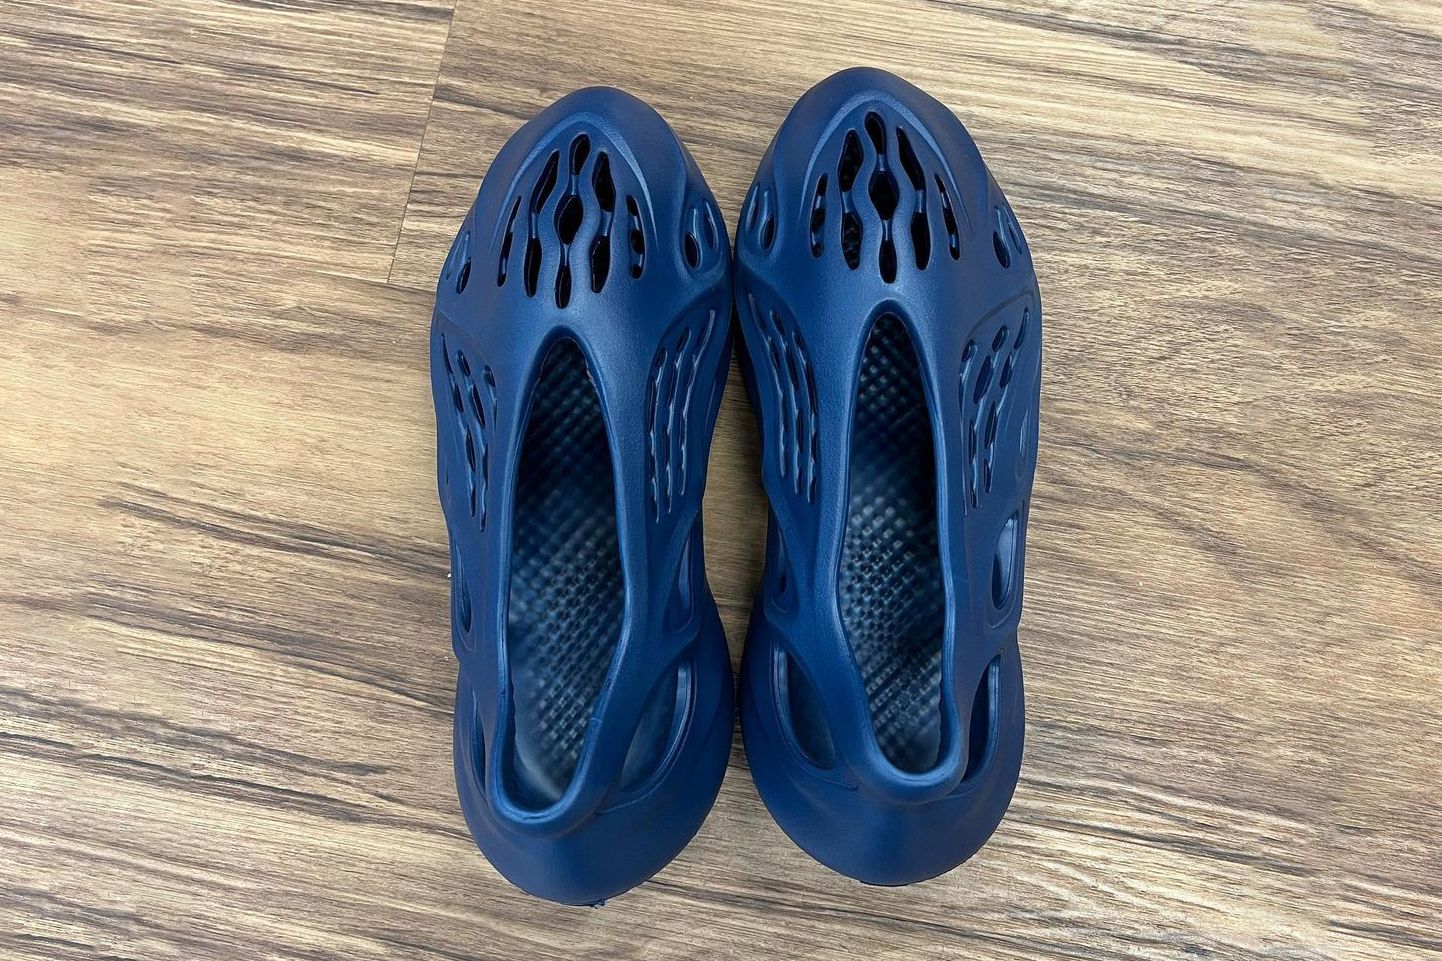 adidas Yeezy Foam Runner Navy Blue